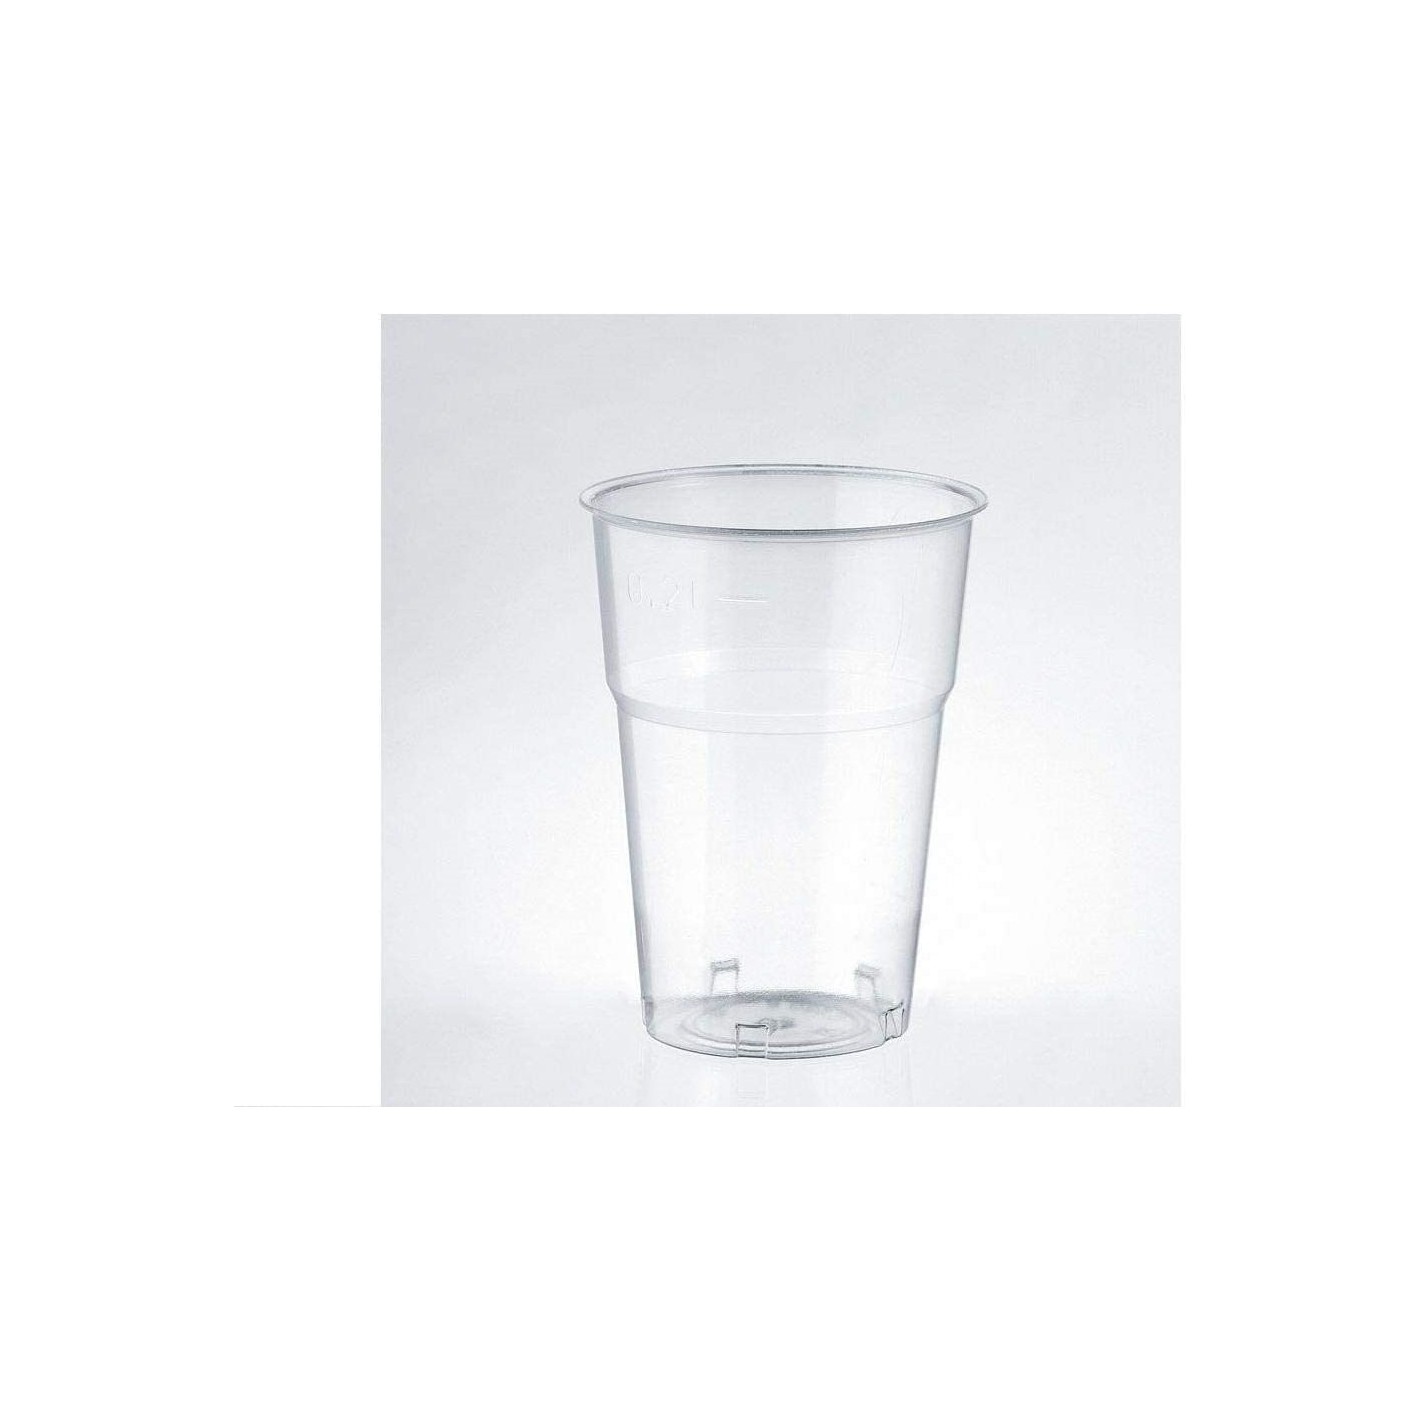 https://www.formoso.it/5707-thickbox_default/bicchieri-in-plastica-rigida-modello-kristall-ml-250-confezione-da-50-pezzi.jpg